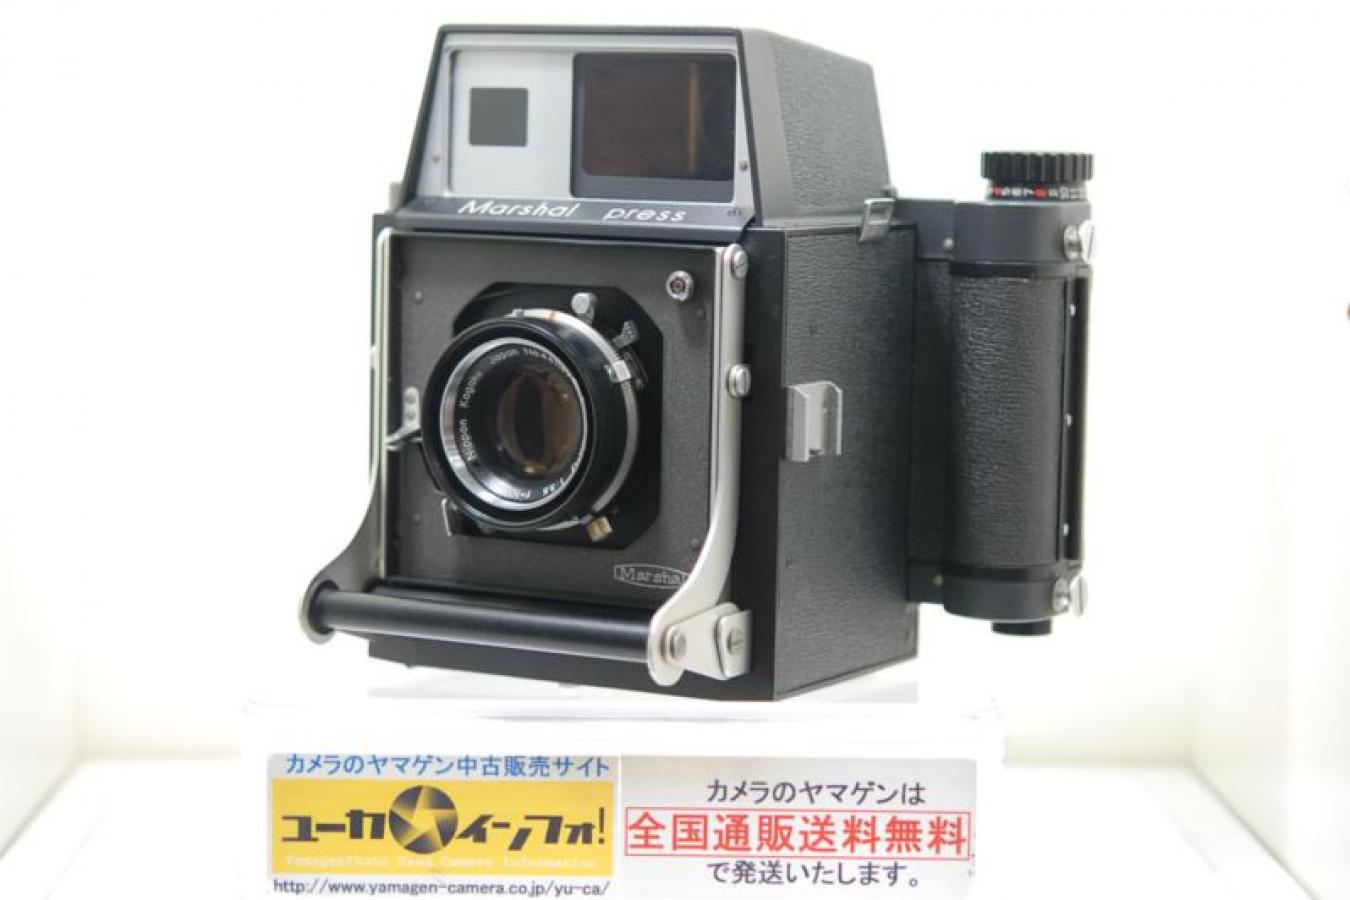 マーシャル光学 Marshal Press 日本光学Nikkor 105/3.5付  